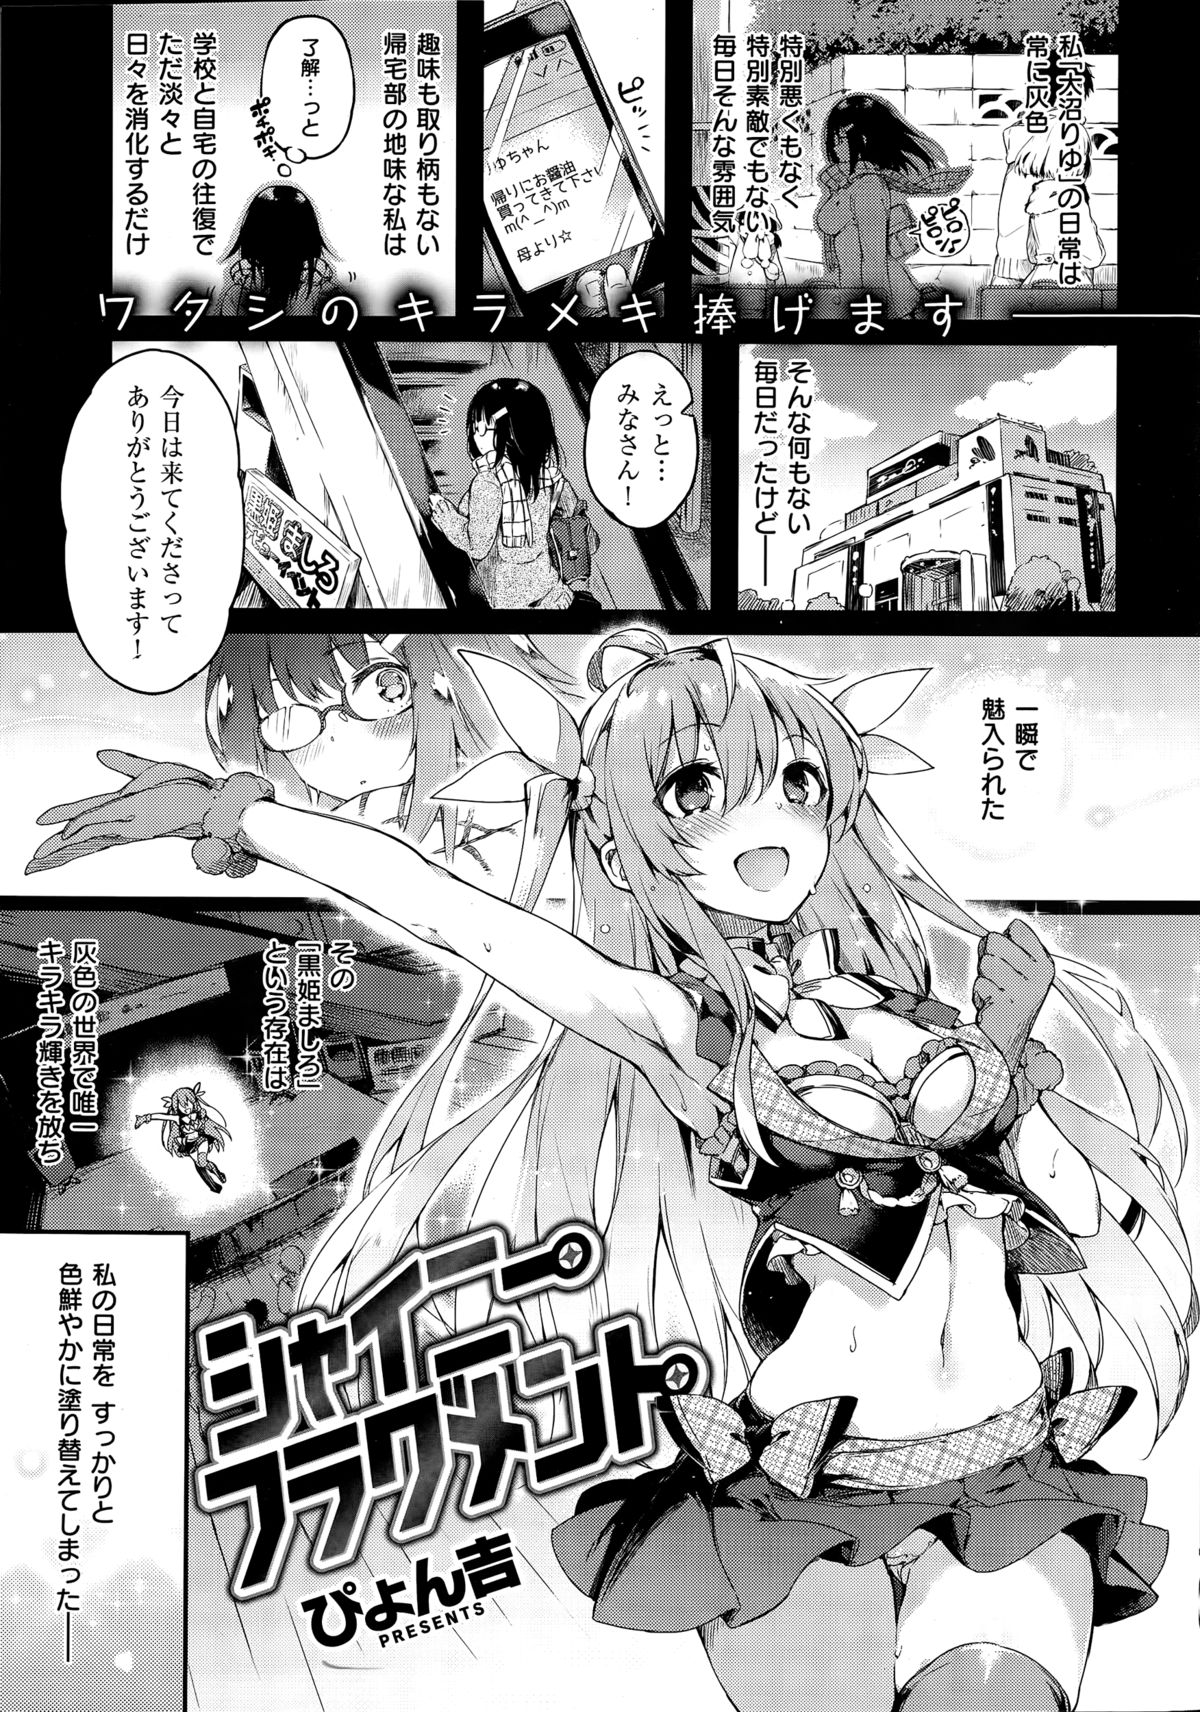 [ぴょん吉] [Pyon-Kti] COMIC Kairakuten BEAST 2015-03 [Joze] page 1 full